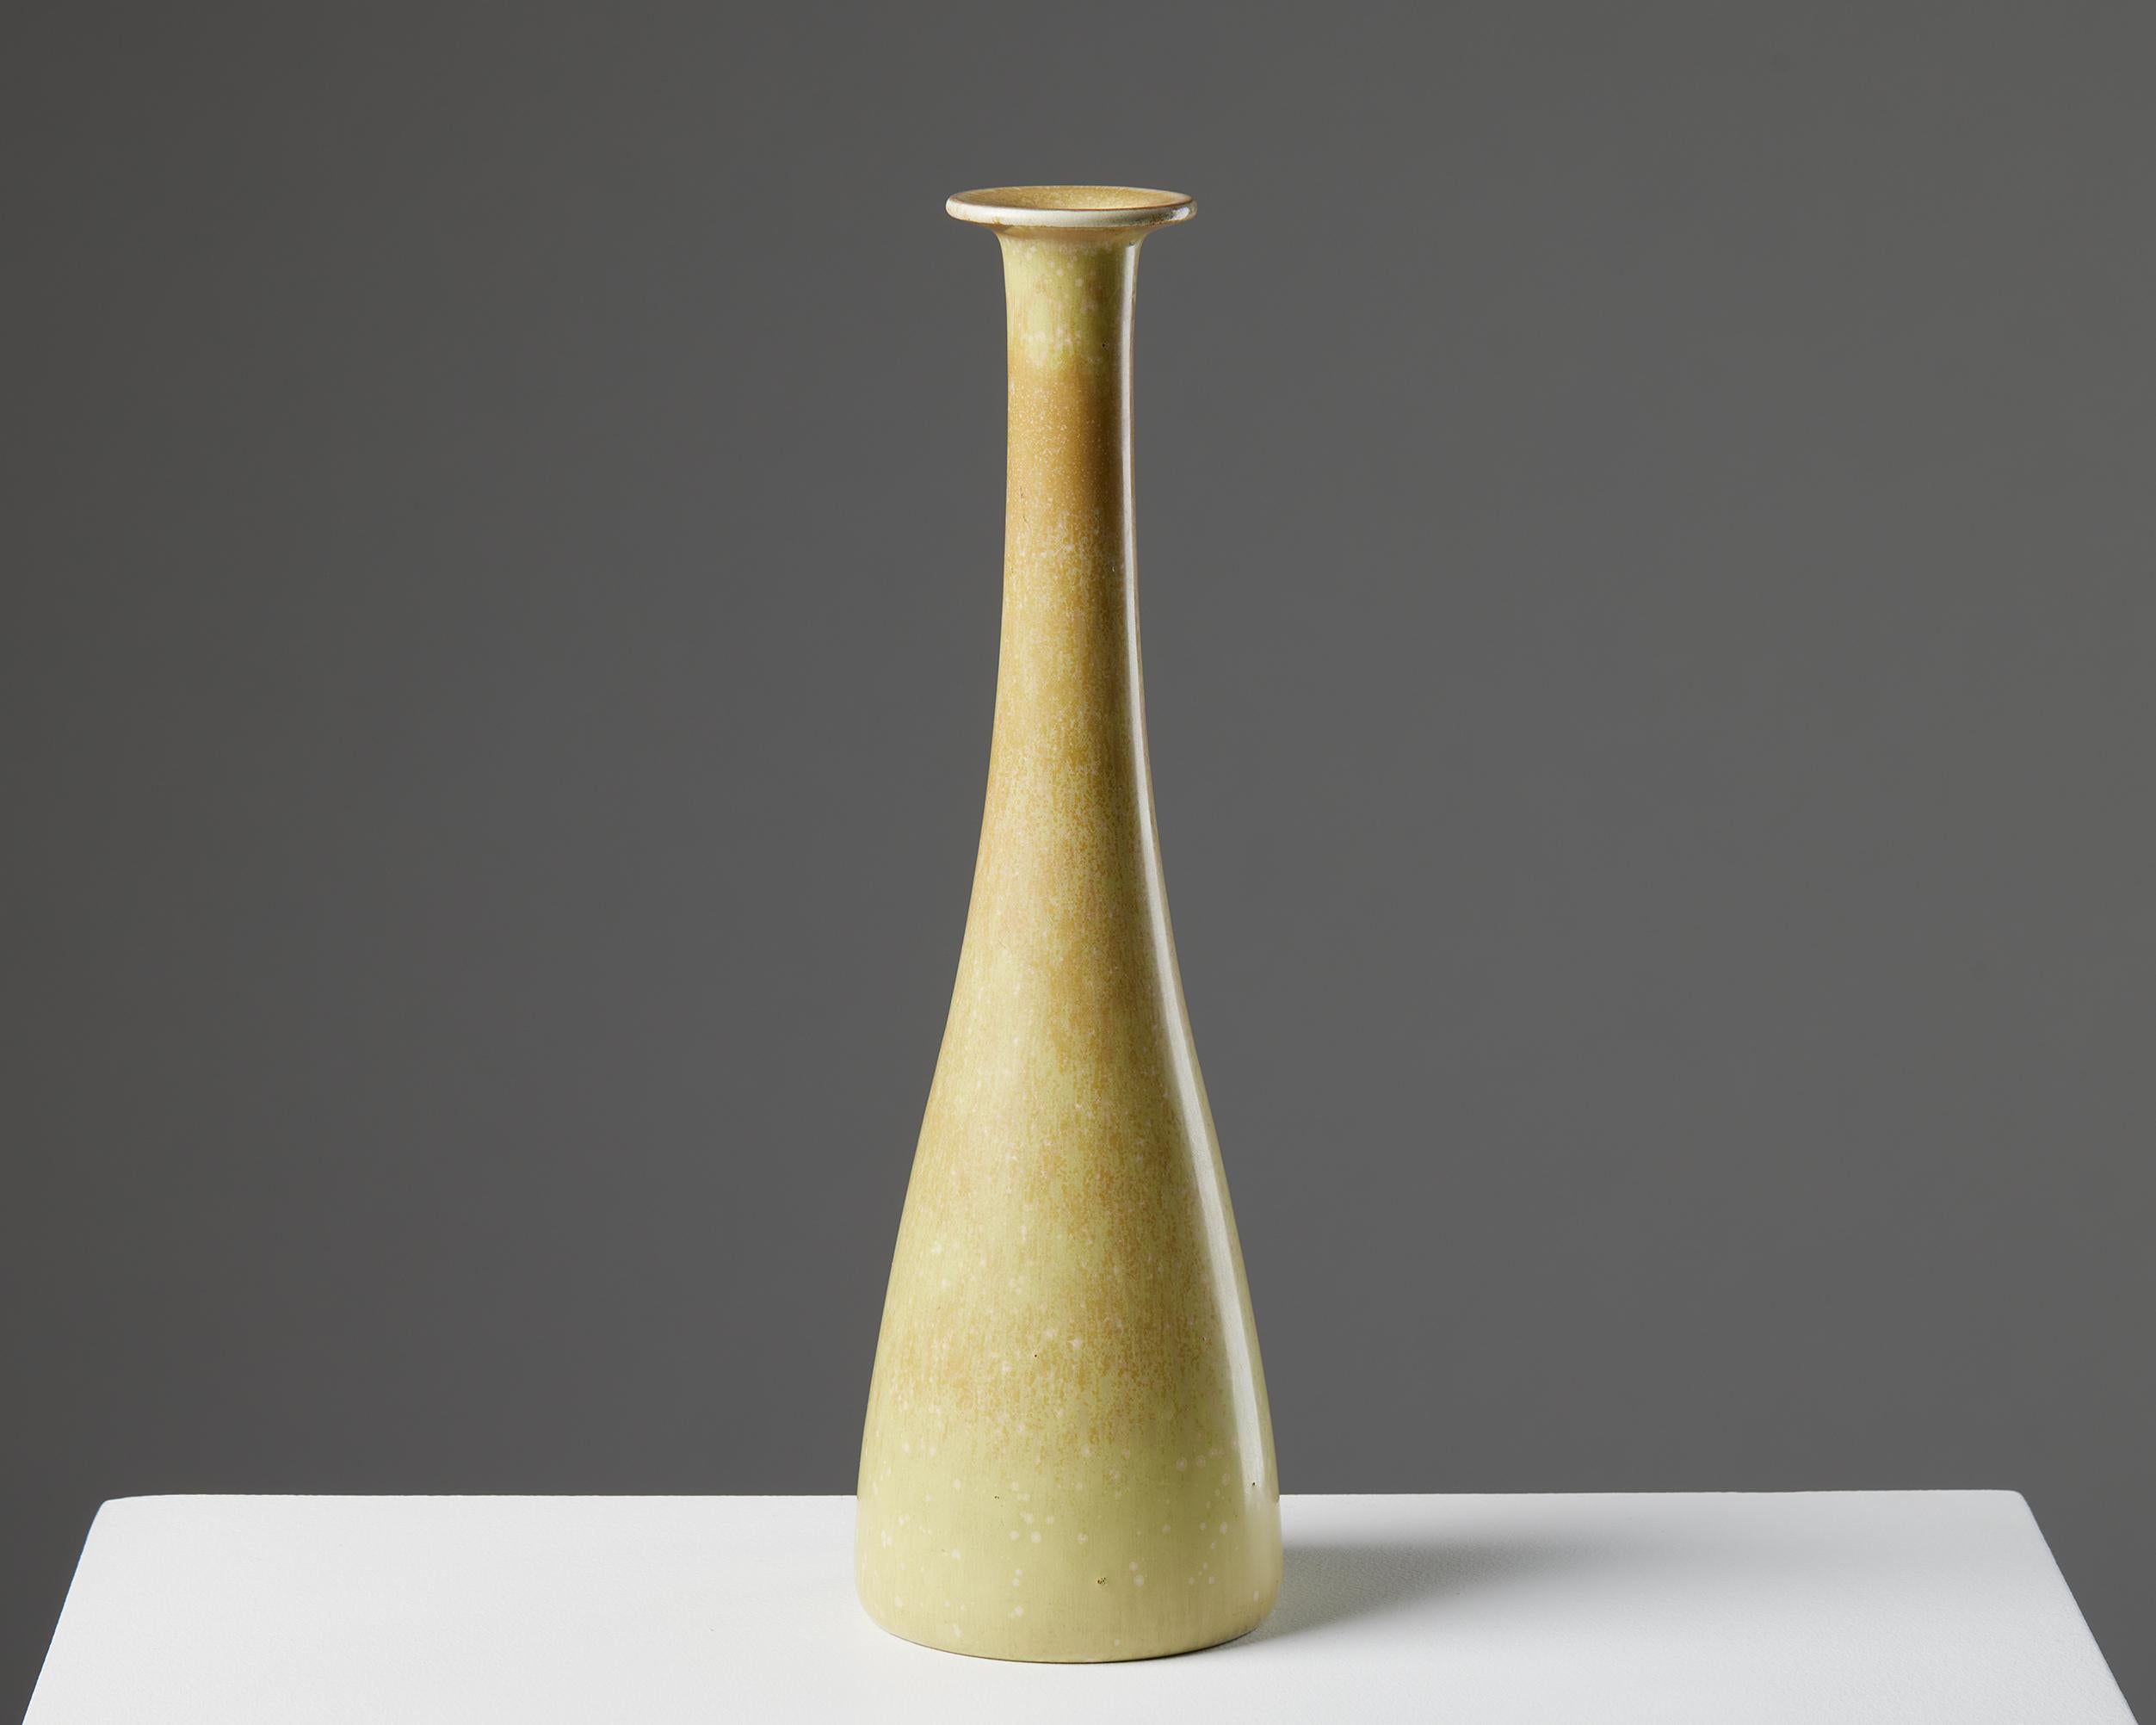 Vase designed by Gunnar Nylund for Rörstrand,
Sweden. 1950s.
Eggshell glaze.

Signed.

Measures: H: 26.5 cm / 10